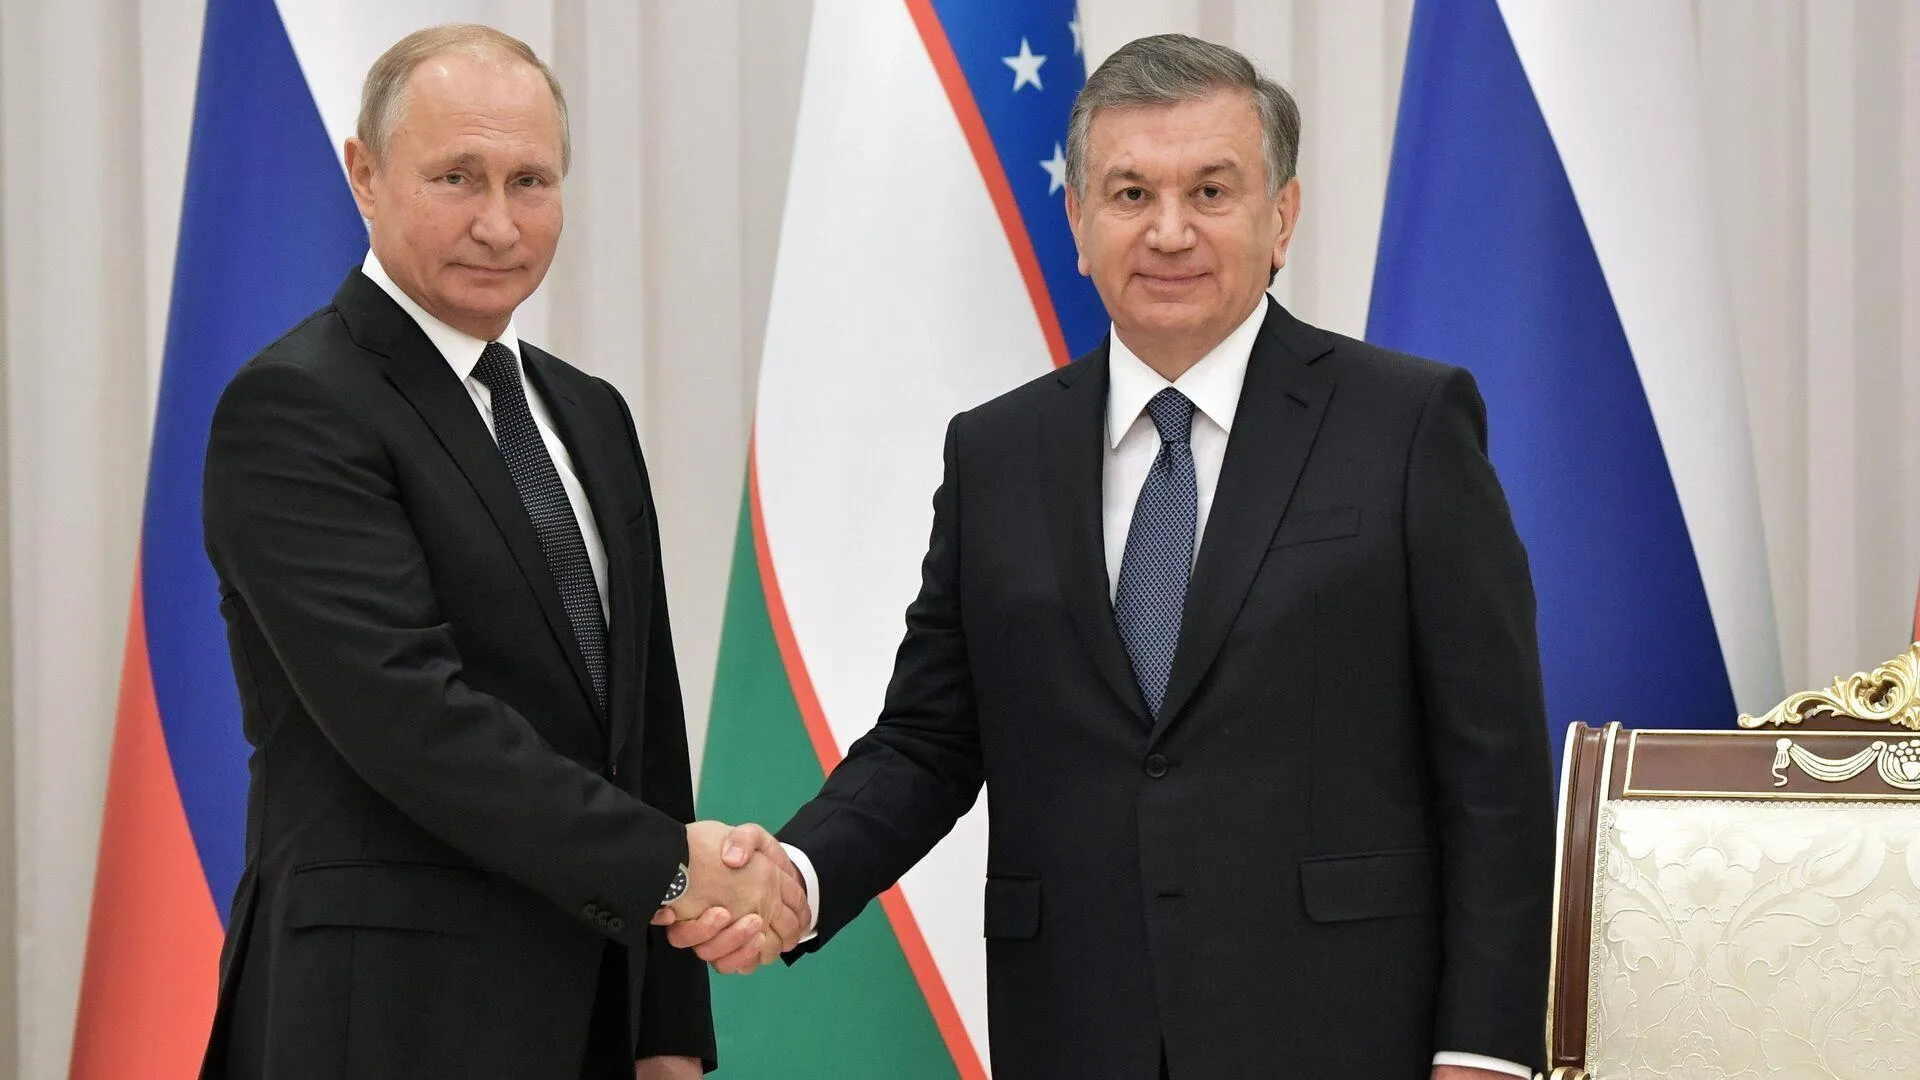 Мирзиеев поздравил Путина с убедительной победой на выборах и пожелал успехов